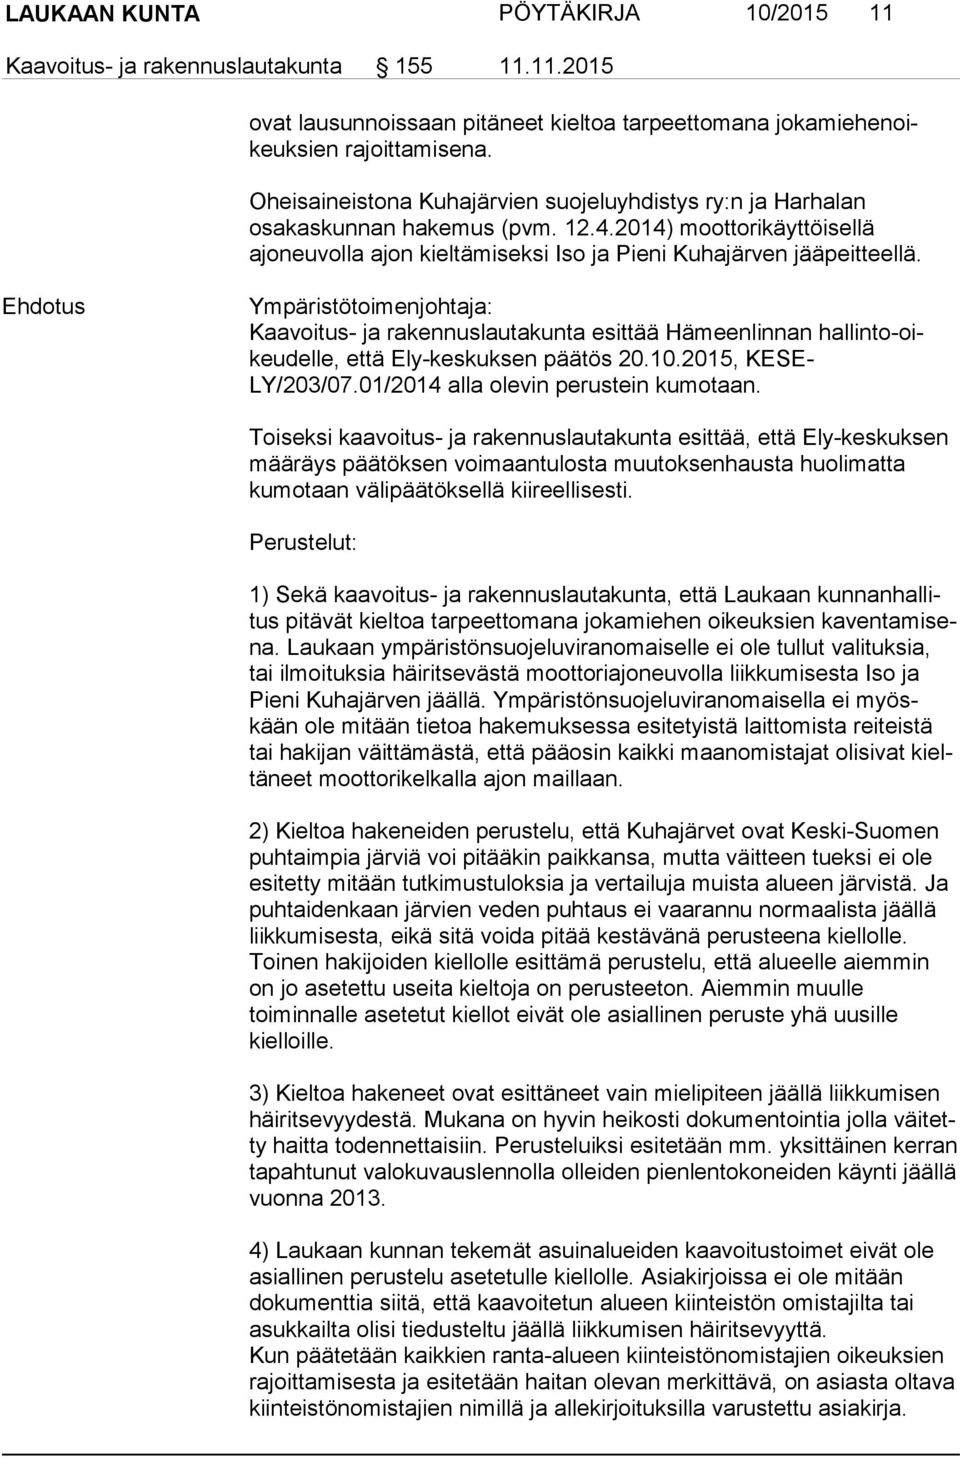 Ehdotus Ympäristötoimenjohtaja: Kaavoitus- ja rakennuslautakunta esittää Hämeenlinnan hal lin to-oikeu del le, että Ely-keskuksen päätös 20.10.2015, KE SE- LY/203/07.